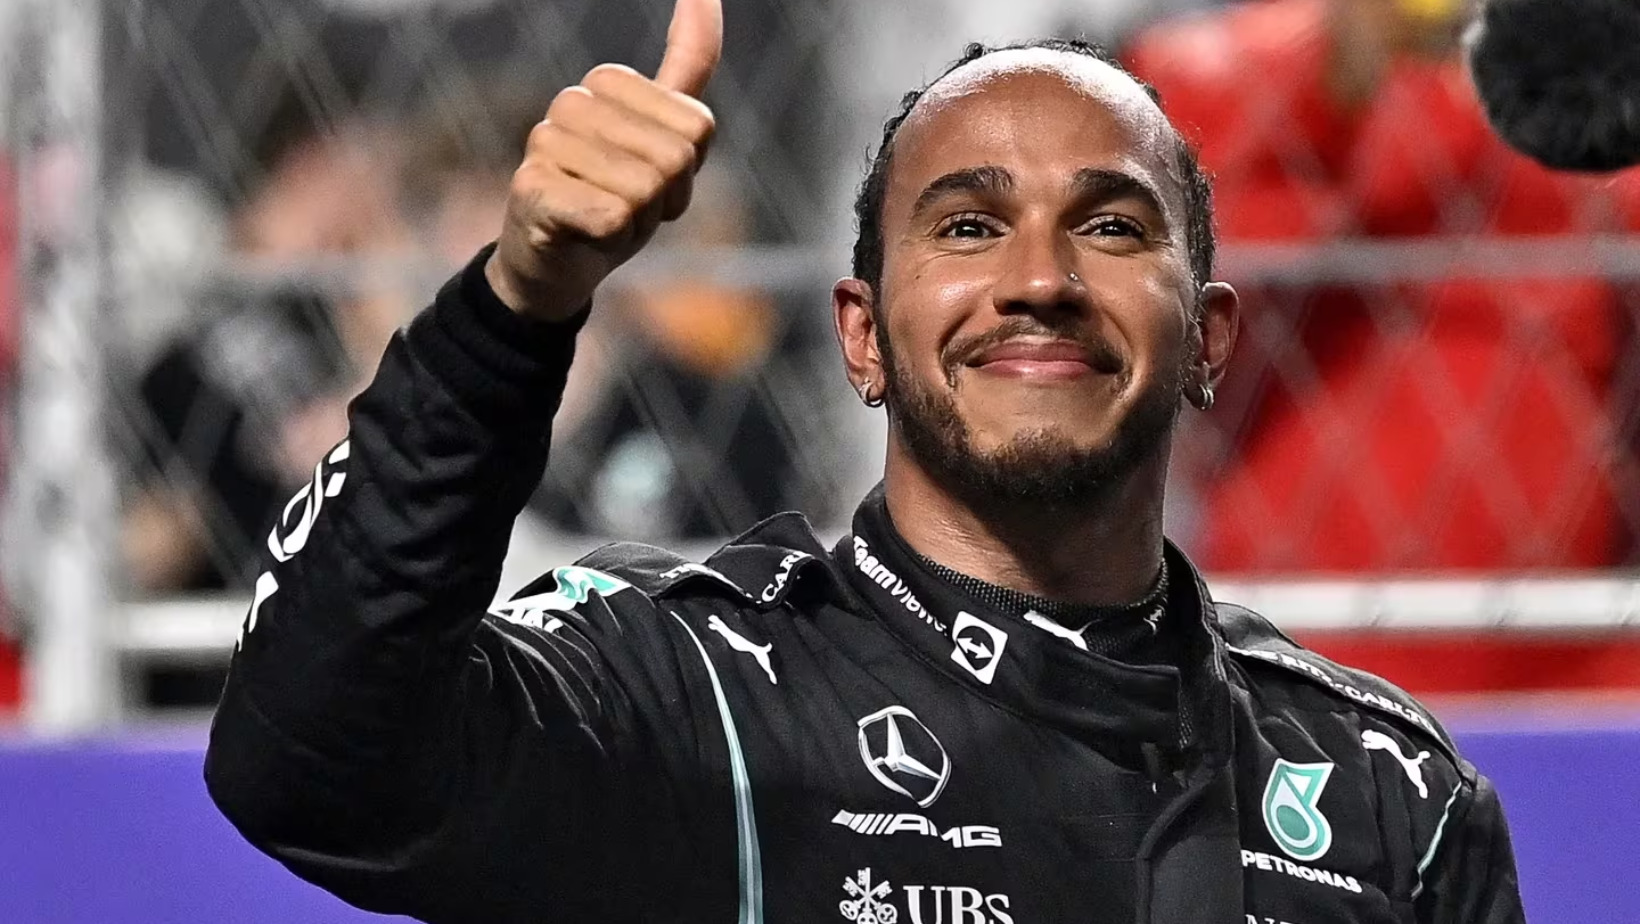 Lewis Hamilton, piloto de automovilismo británico. Foto: Fuente externa